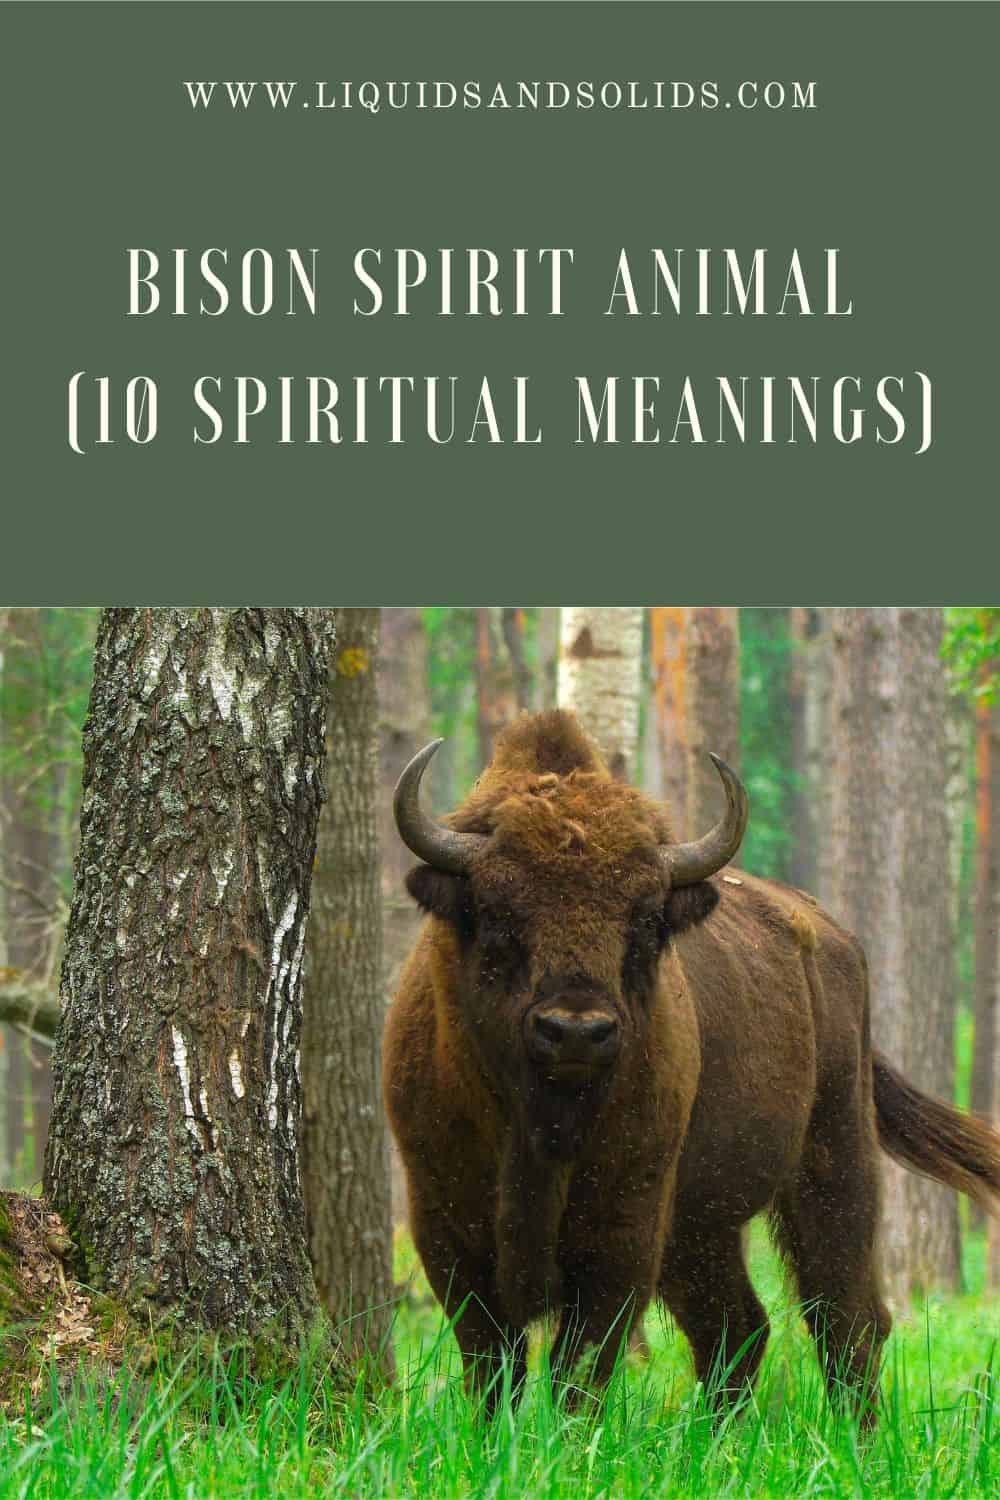  حيوان روح بيسون (10 معاني روحية)